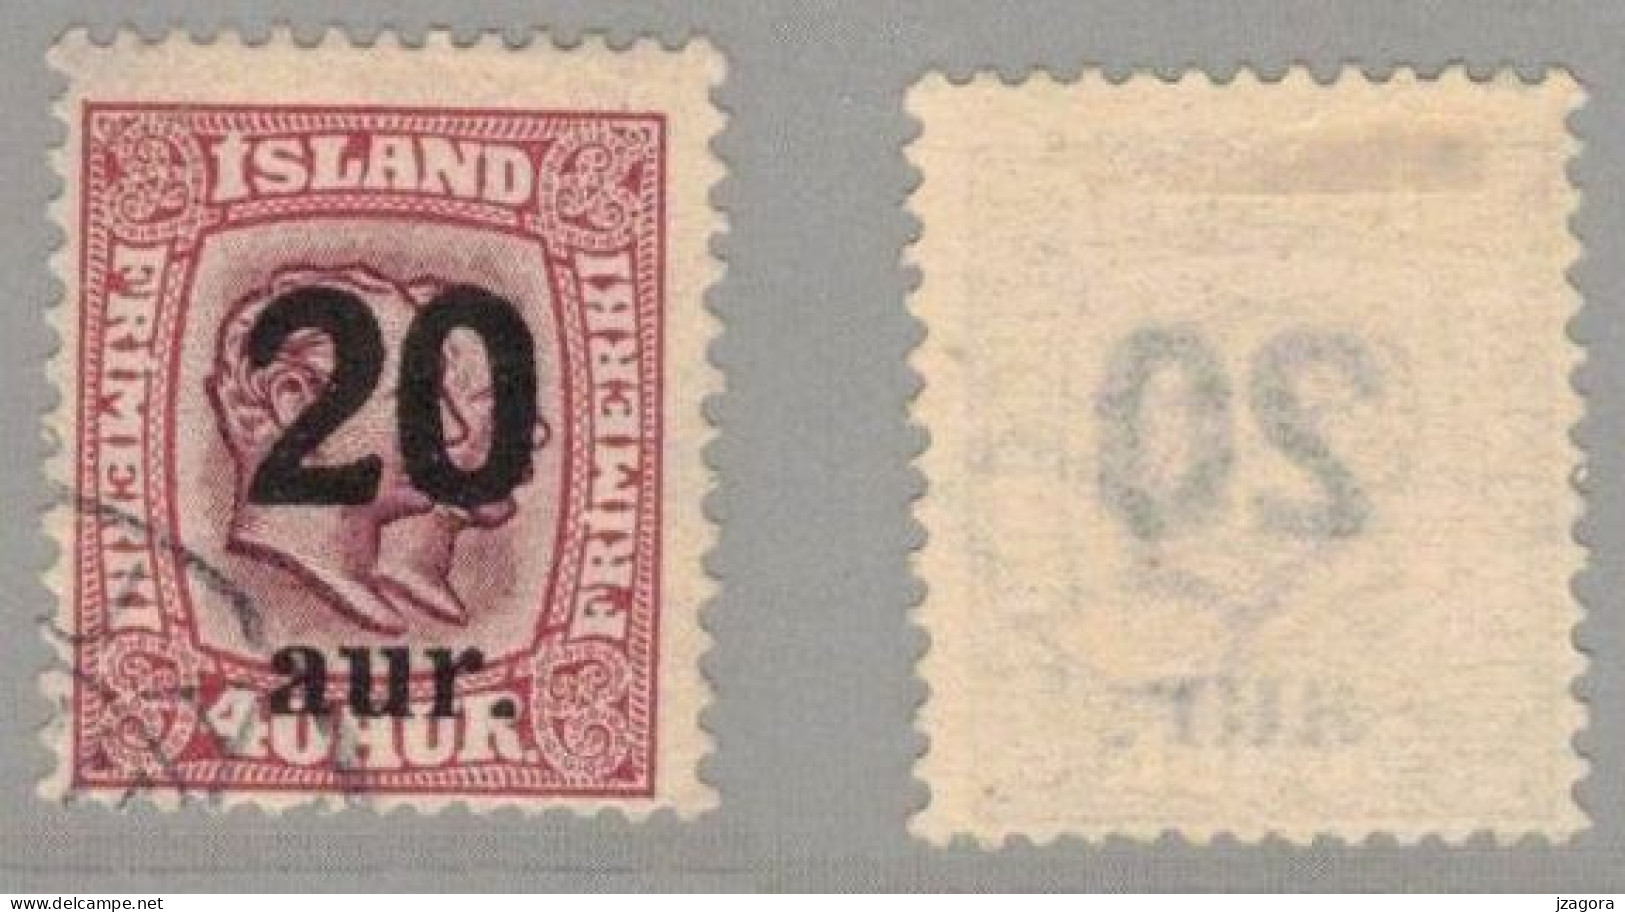 ISLAND ICELAND  1922 OVERPRINT 20 ON 40 AUR - MI 107 SC 134 FACIT 106 USED - Usati